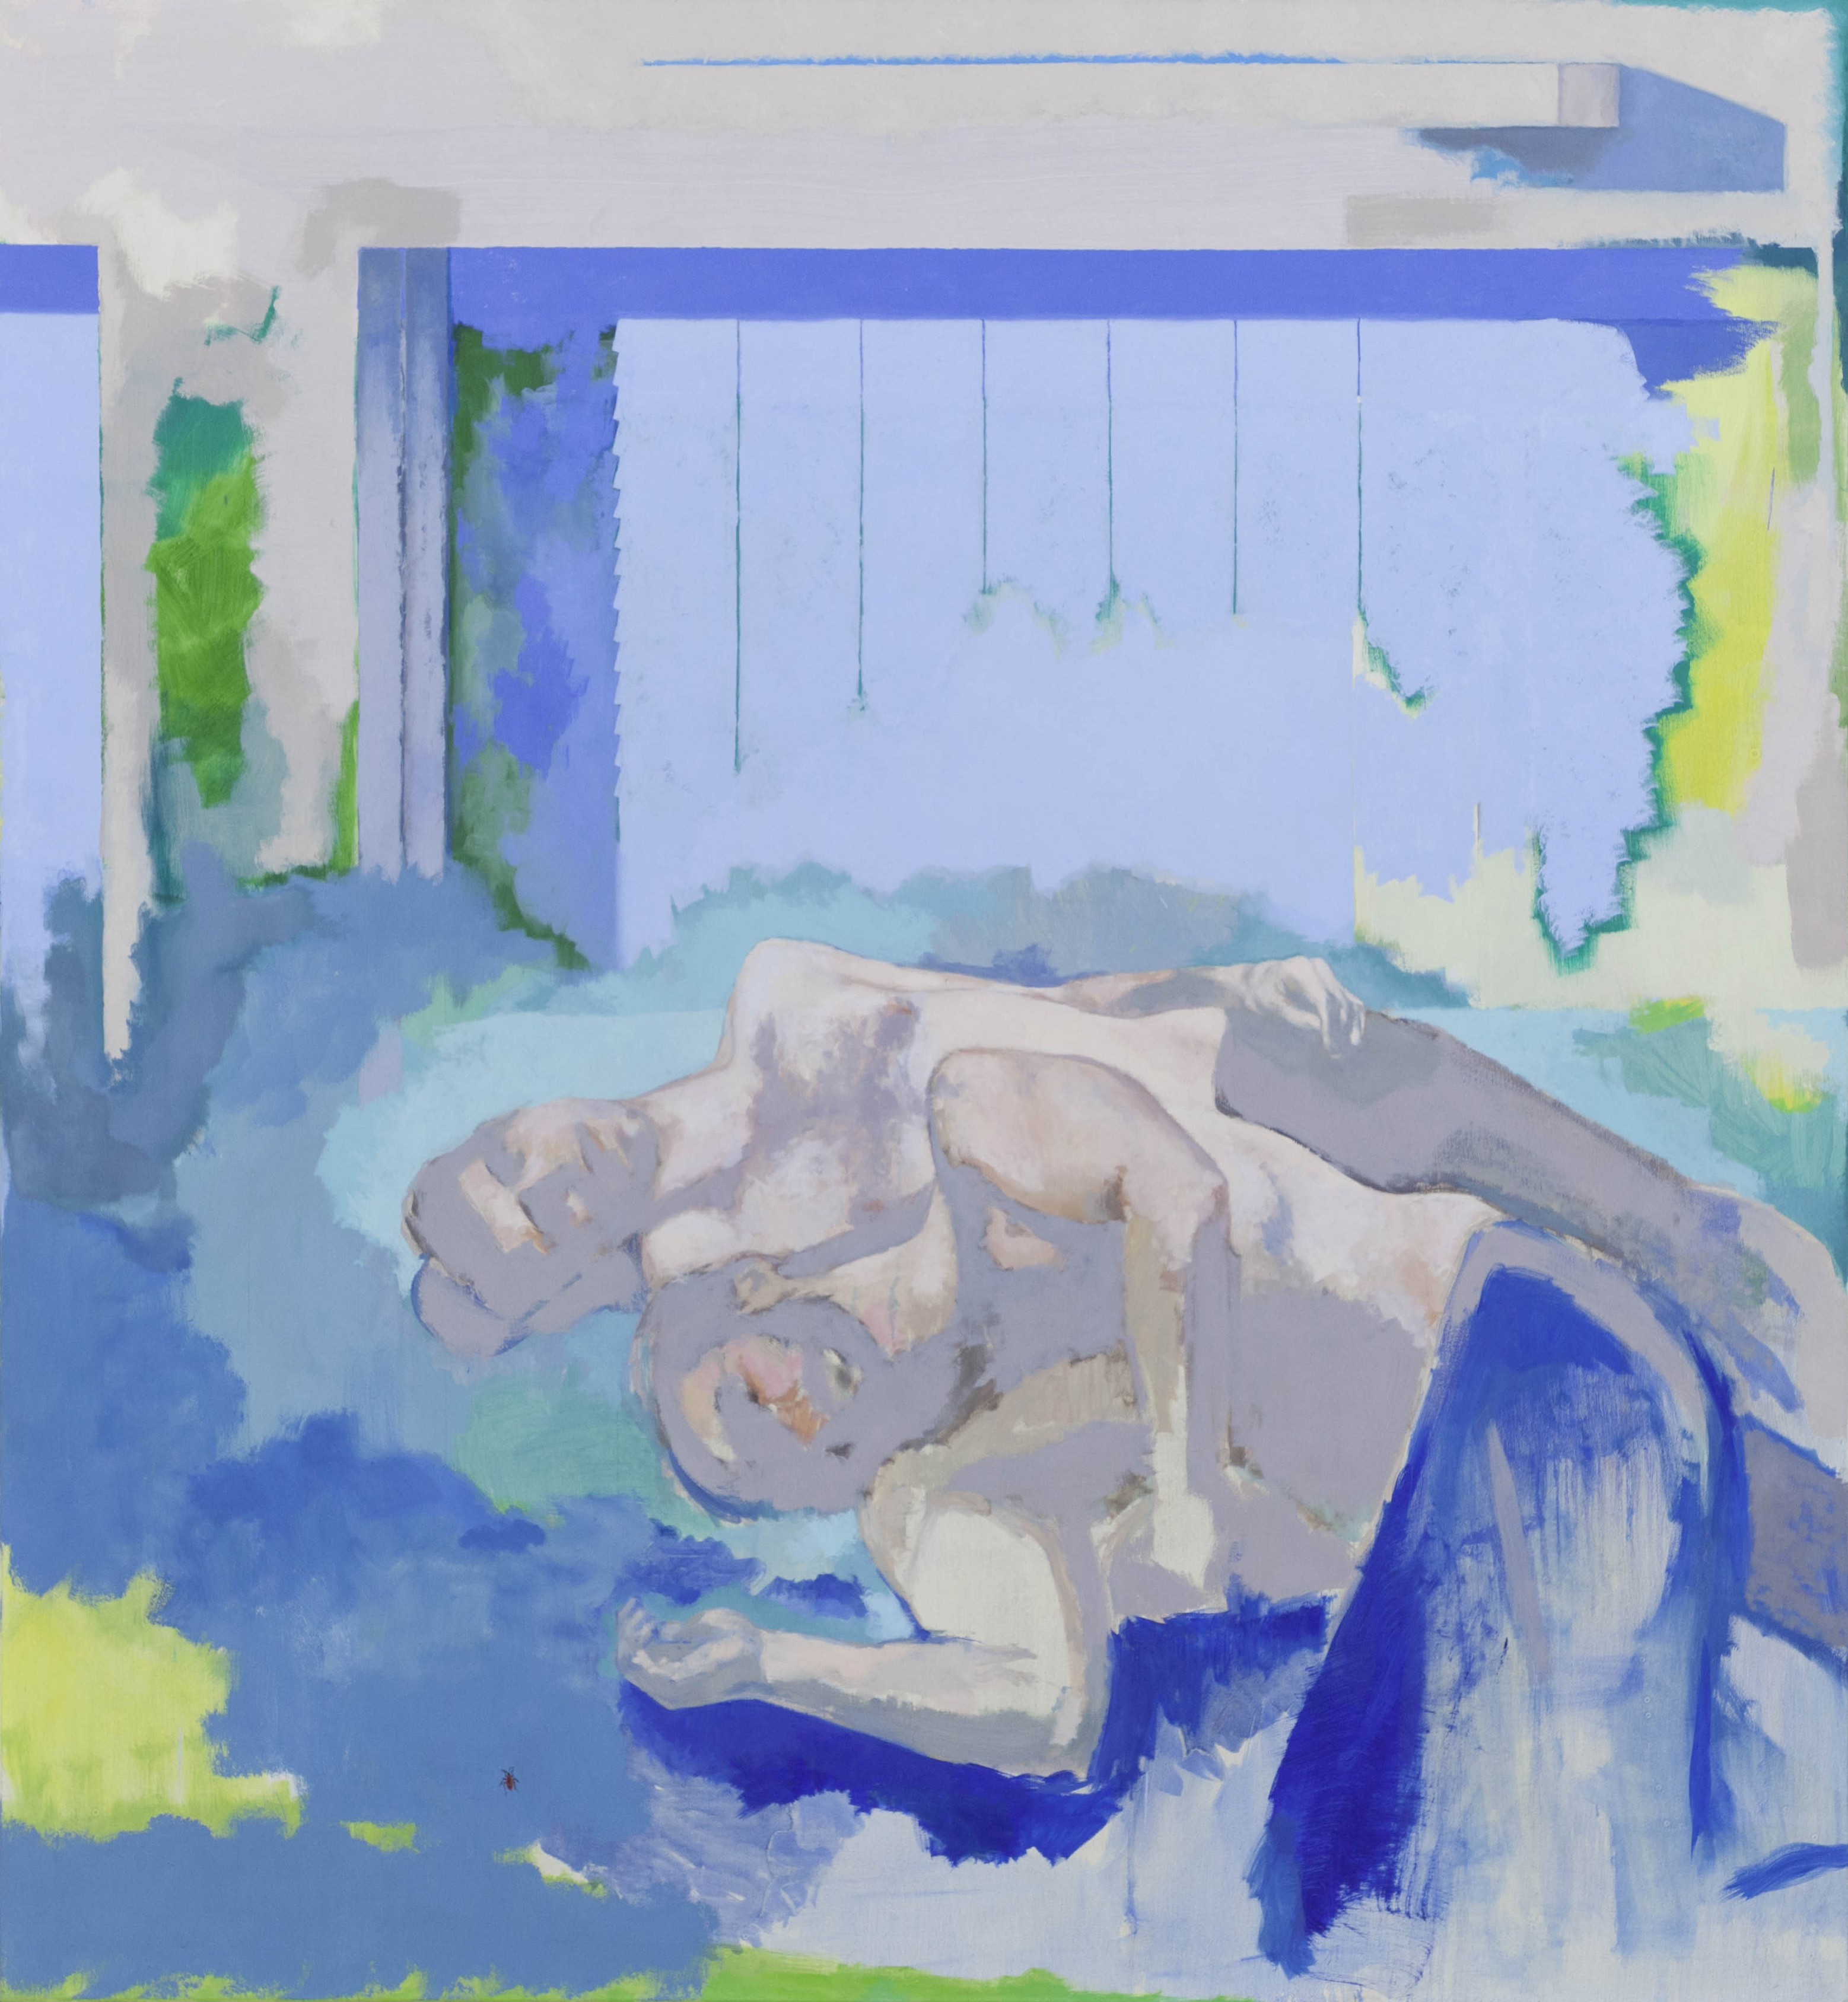 Sans titre, couple devant un volet bleu, 2019, huile sur toile, 195 x 180 cm_photo Julie Coulon_web_1